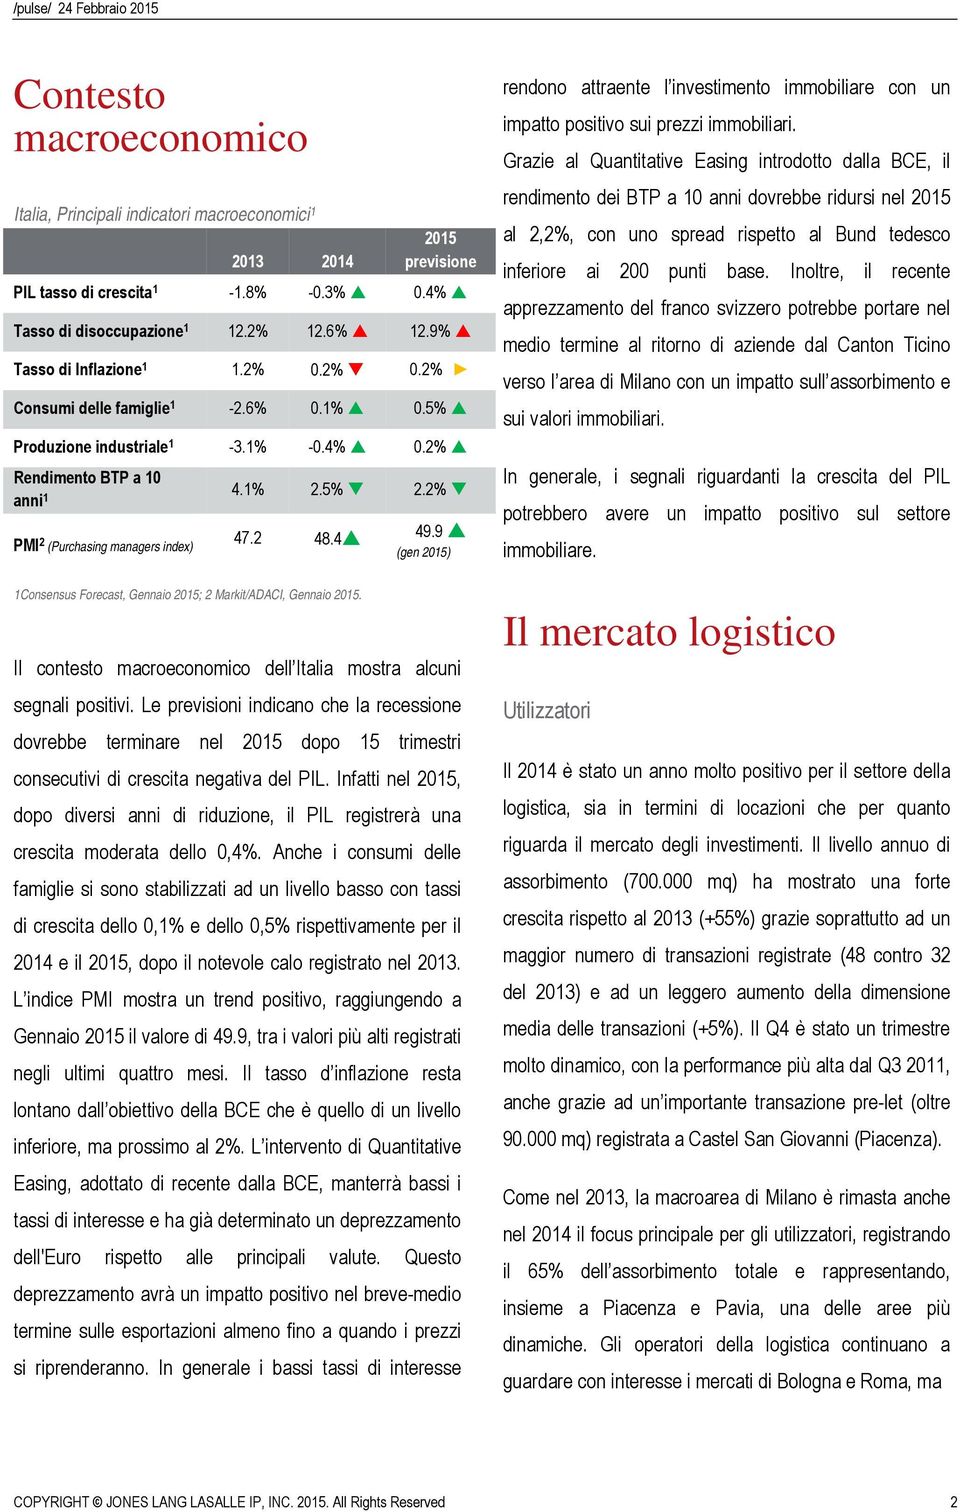 2 48.4 49.9 (gen 2015) 1Consensus Forecast, Gennaio 2015; 2 Markit/ADACI, Gennaio 2015. Il contesto macroeconomico dell Italia mostra alcuni segnali positivi.